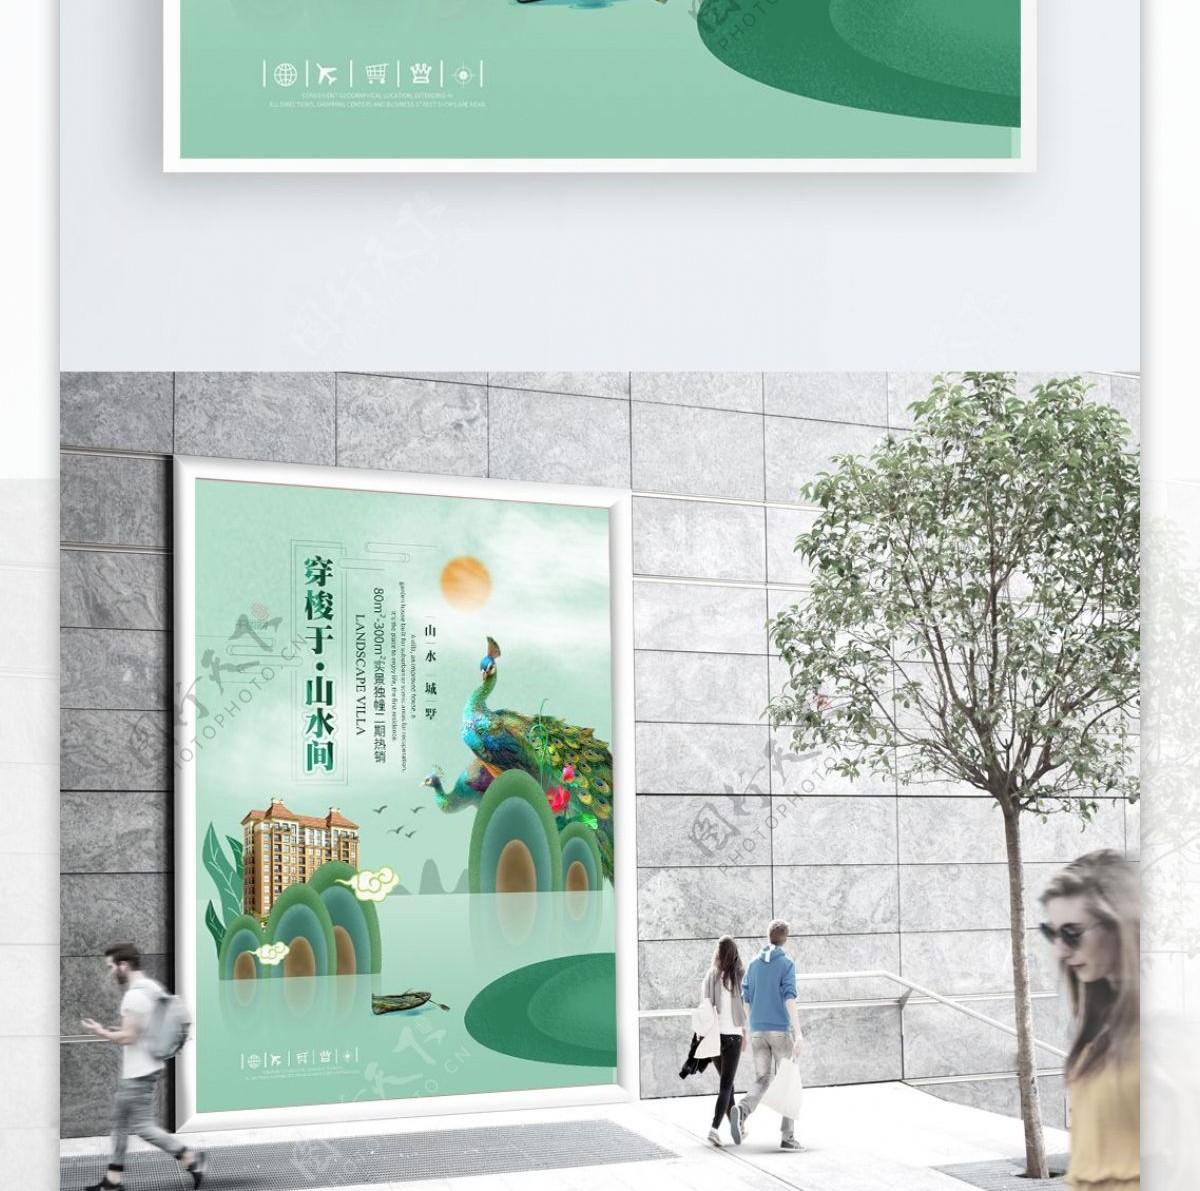 简约绿色中国古风地产海报